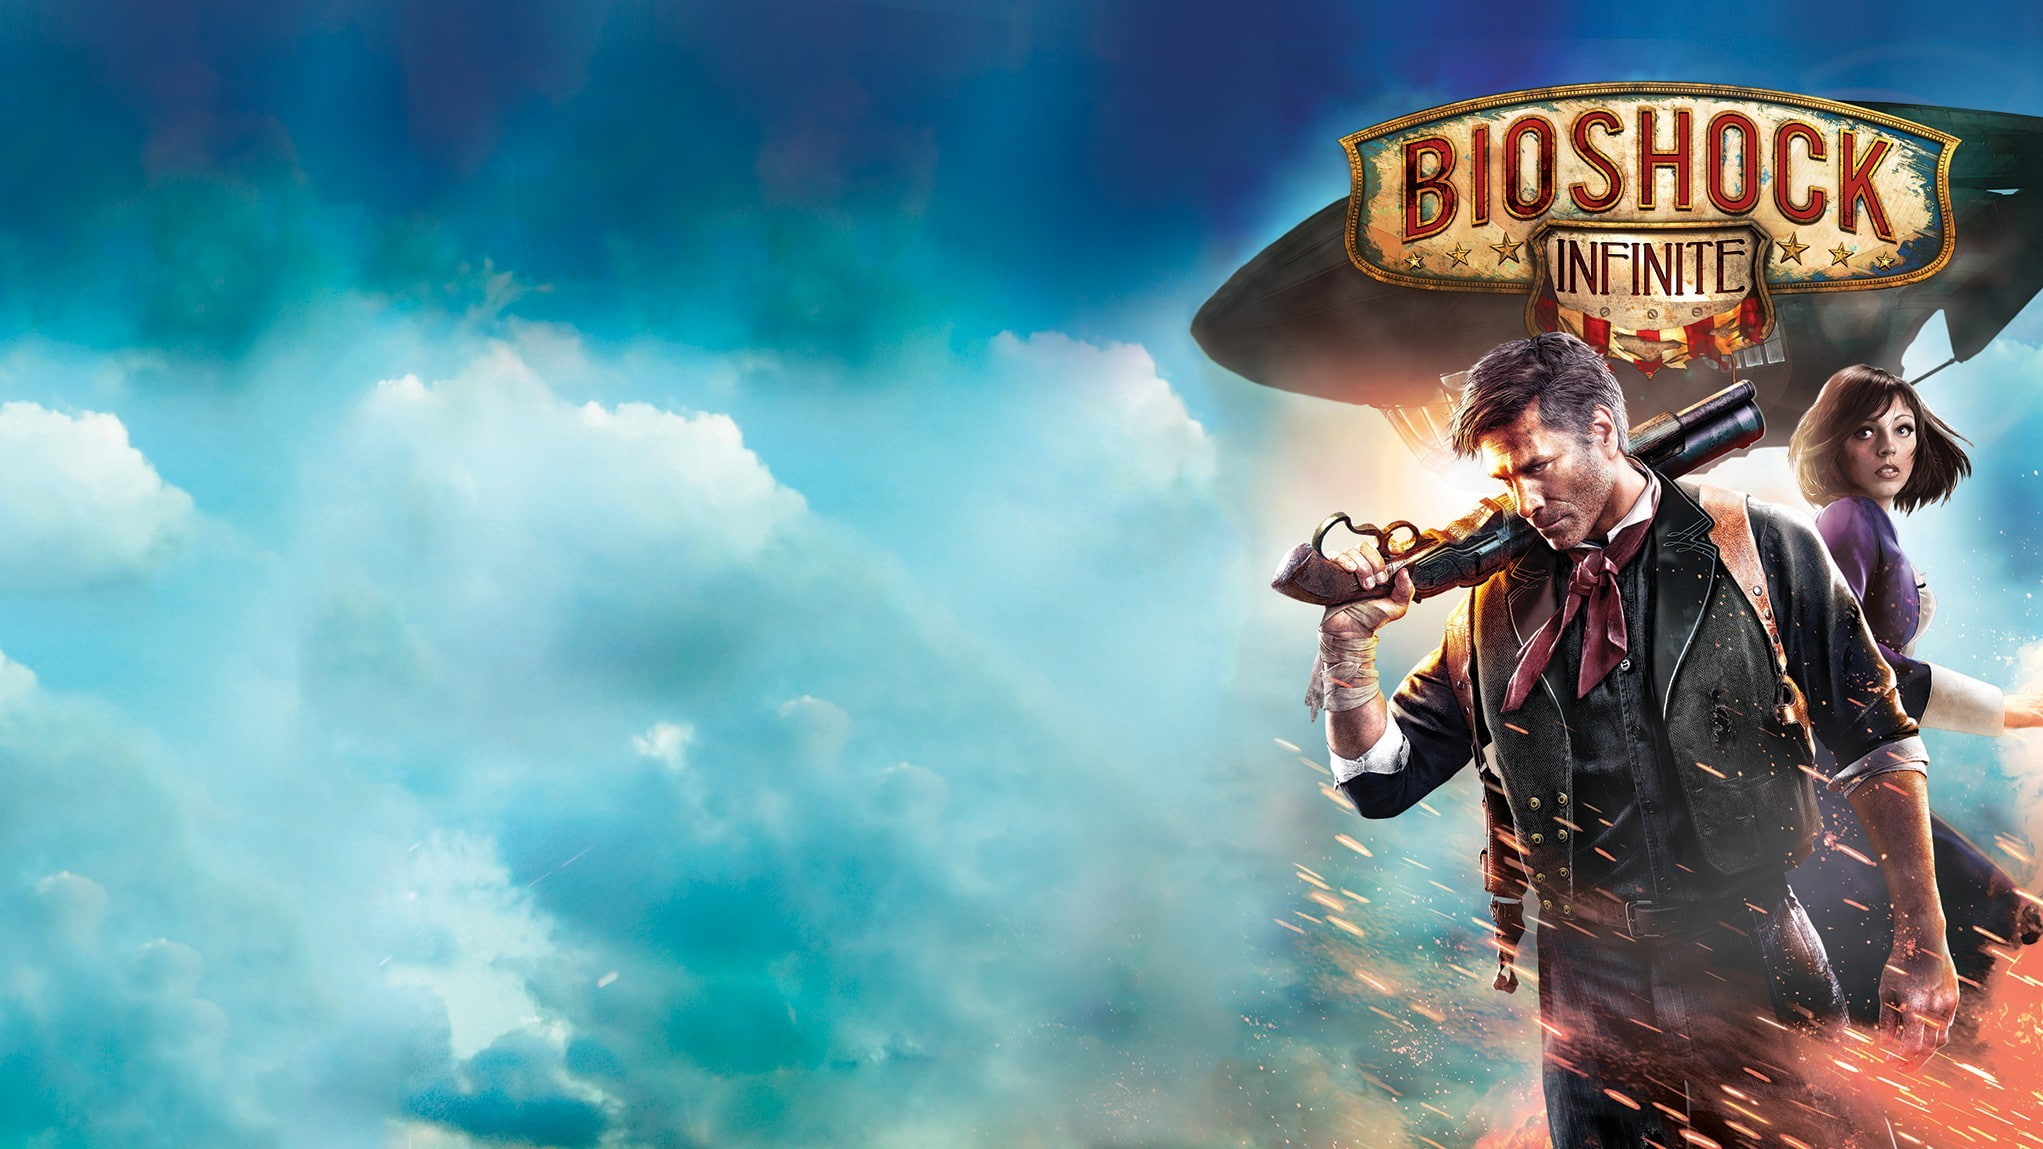 BioShock Infinite, video games, sky, cloud - sky, men, people